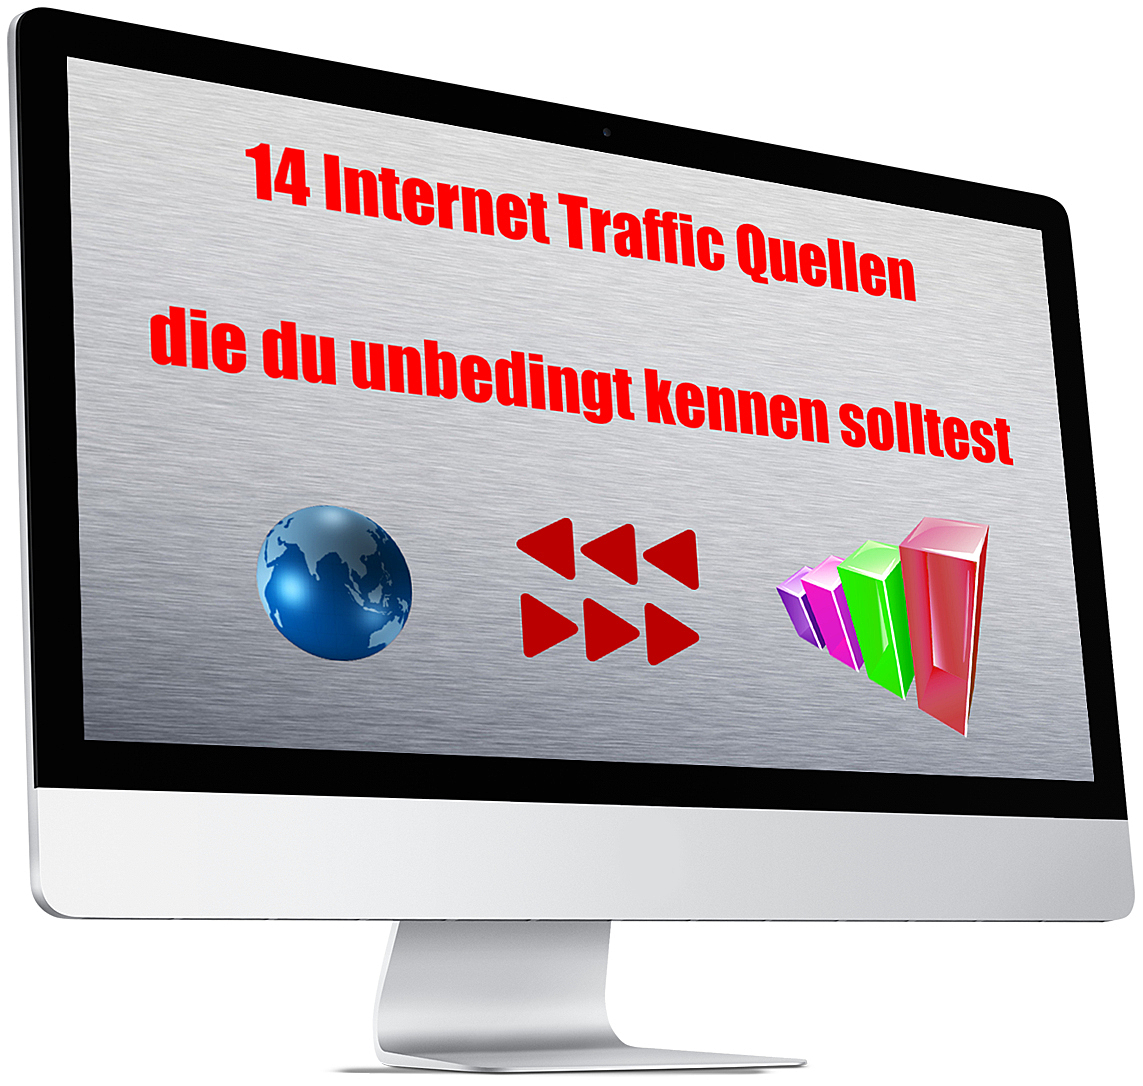 14 Internet Traffic Quellen die du unbedingt kennen solltest